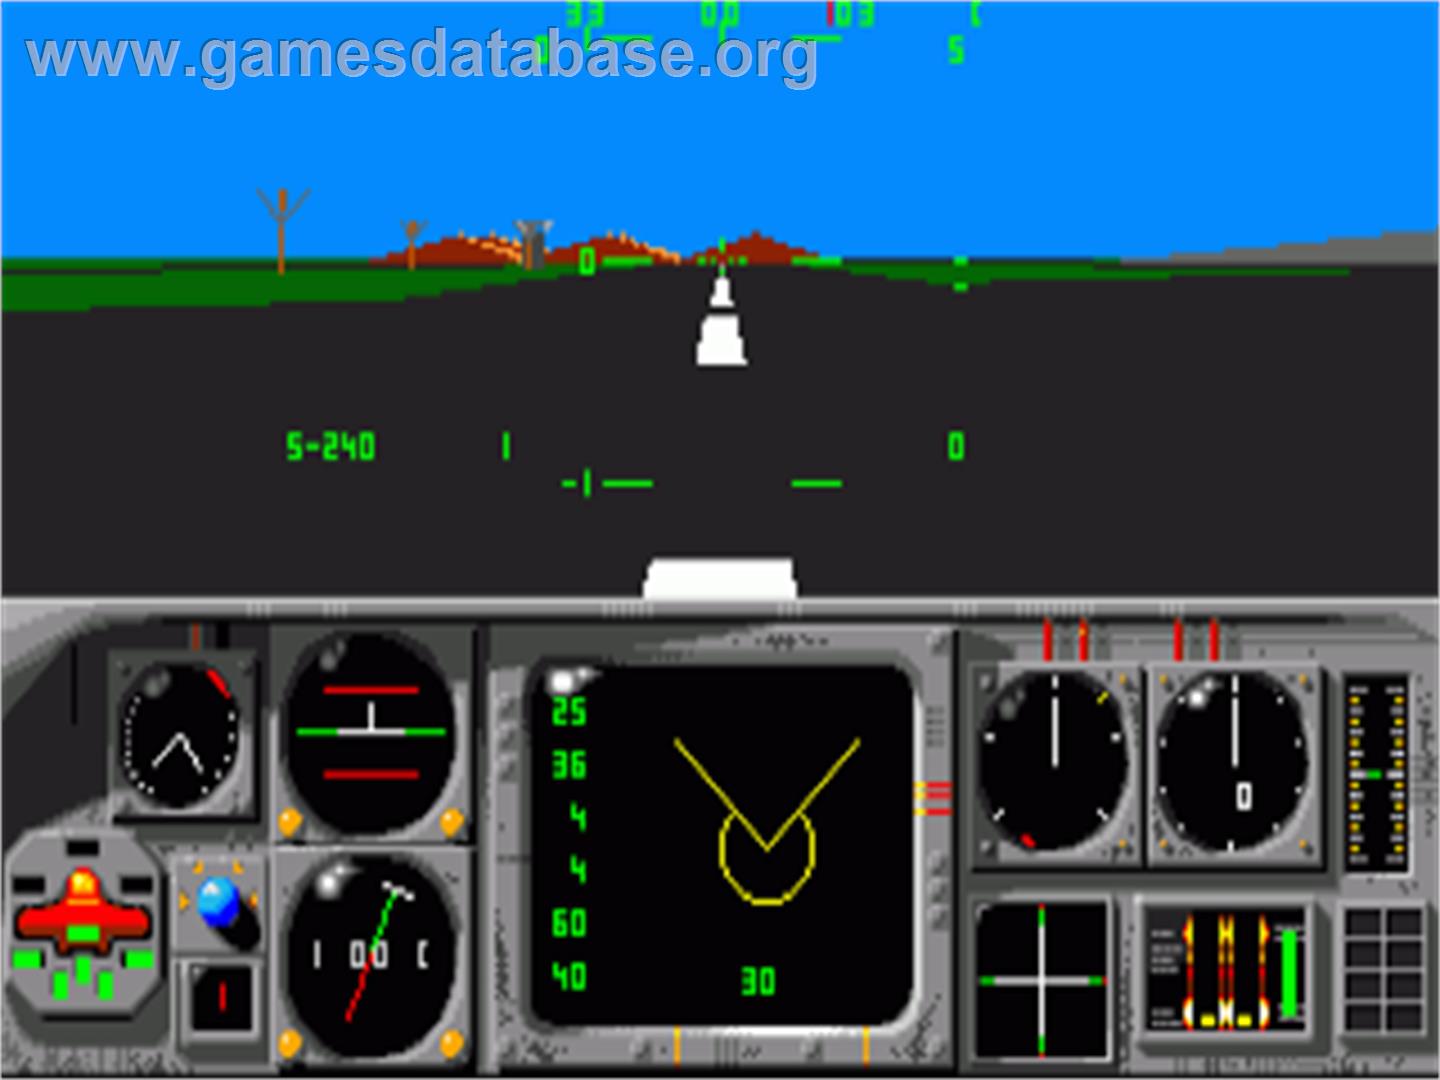 MiG-29M Super Fulcrum - Commodore Amiga - Artwork - In Game